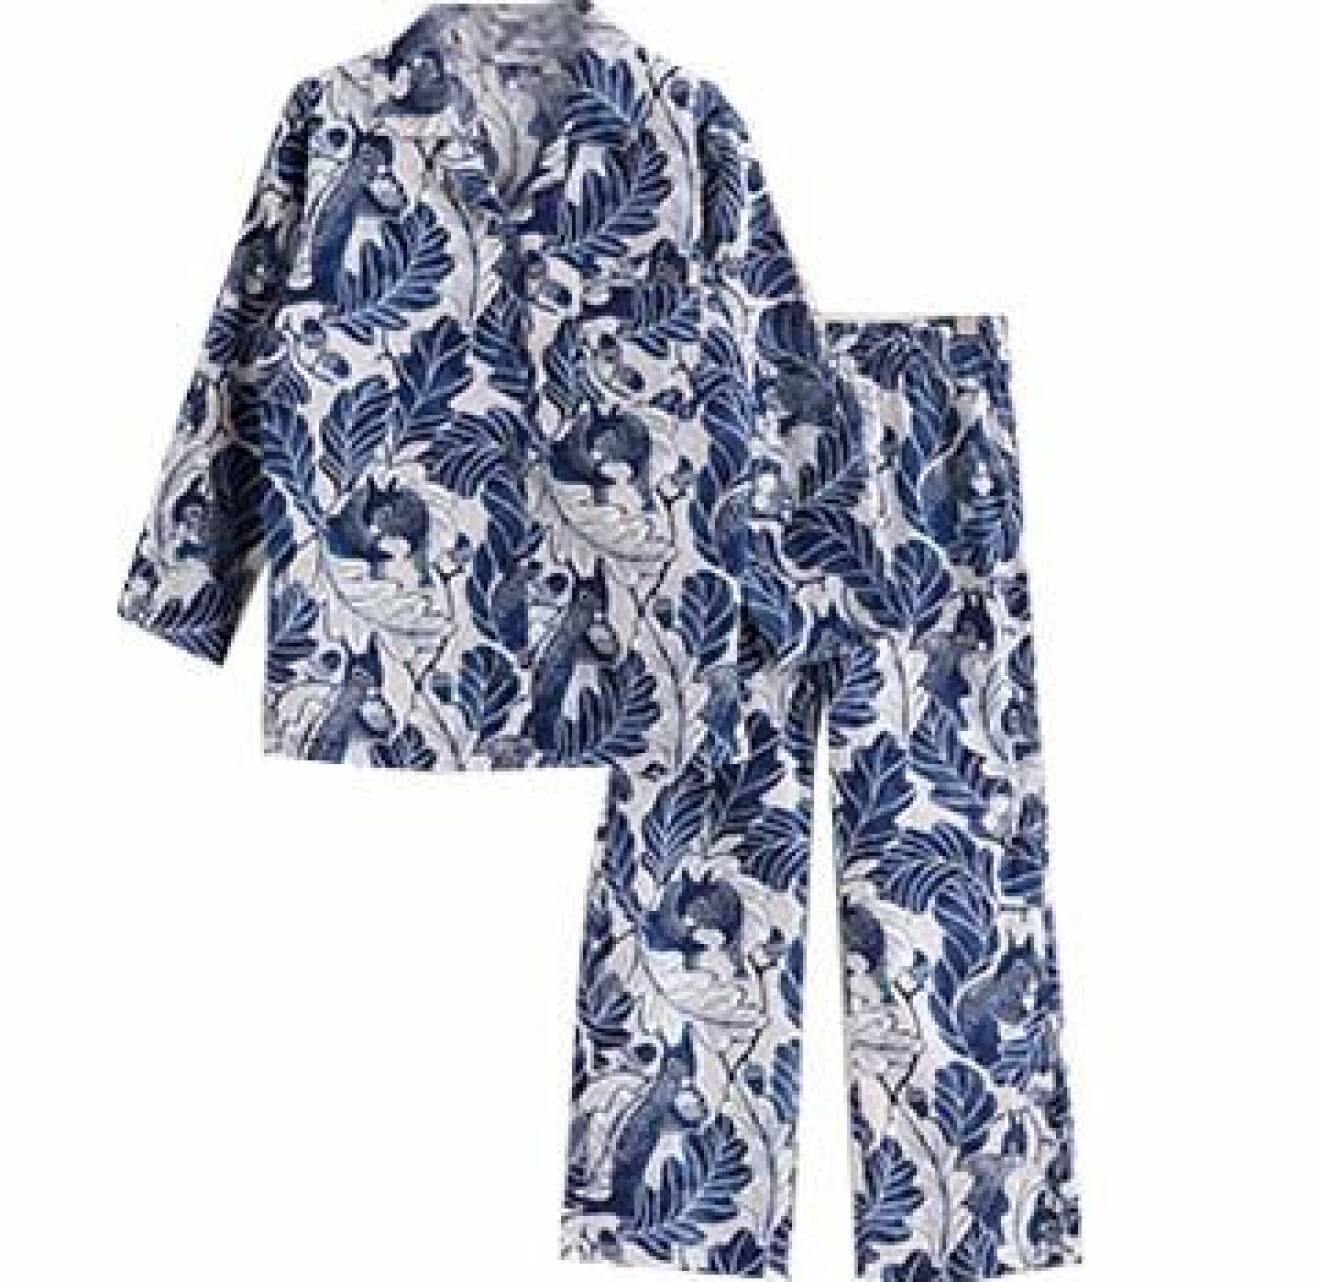 Vit och blå-mönstrad pyjamas